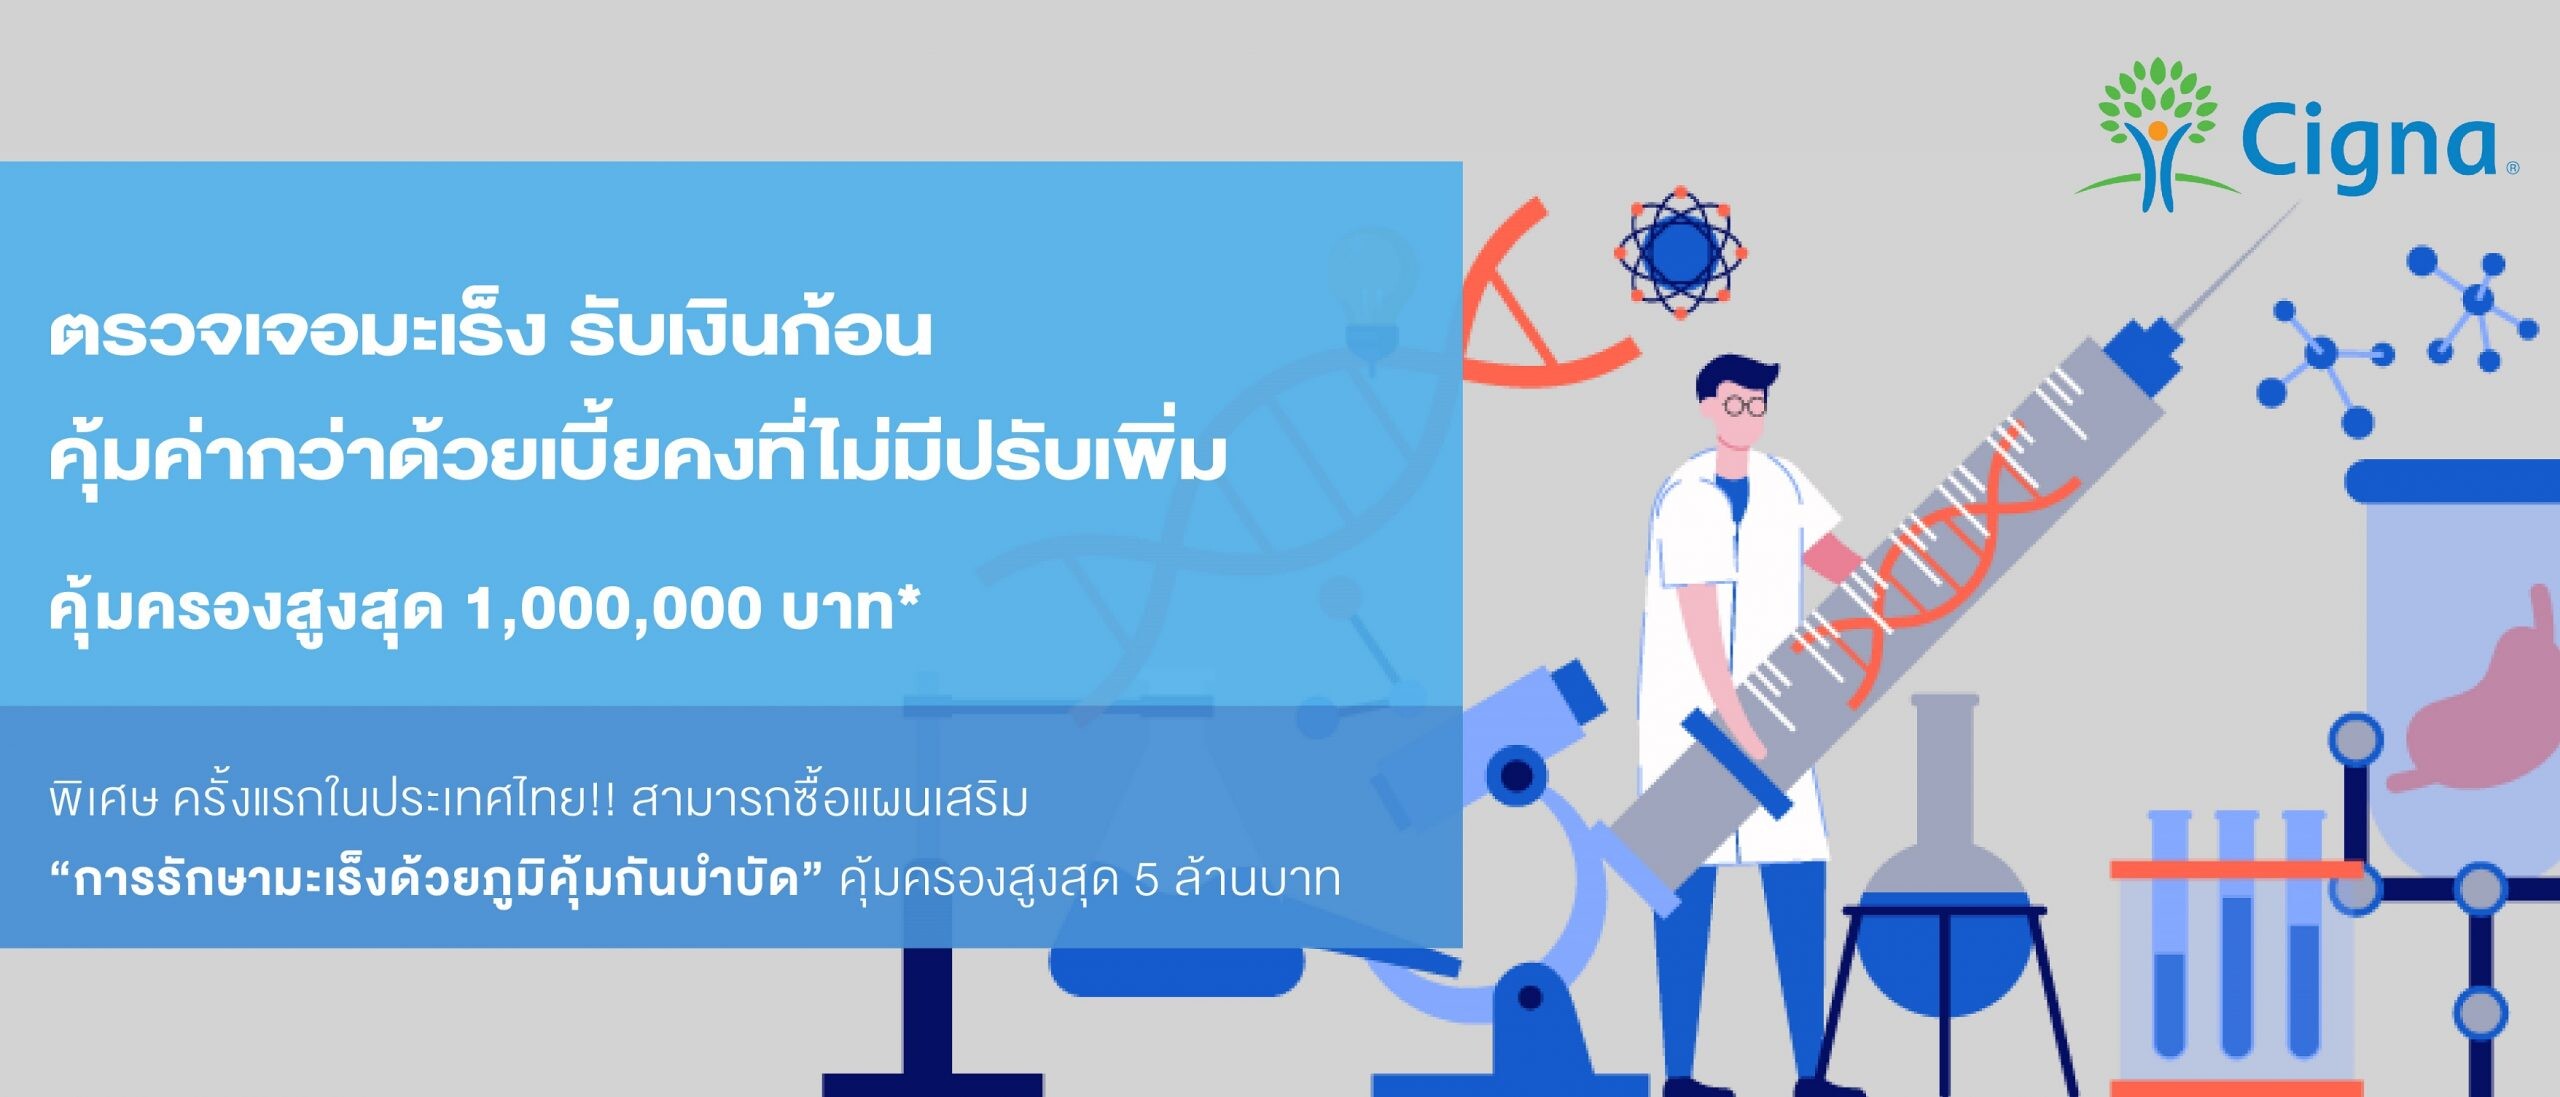 ซิกน่าประกันภัย เปิดตัวประกันคุ้มครองการรักษามะเร็งรูปแบบใหม่ที่แรกในประเทศไทย มอบสิทธิการรักษาด้วยนวัตกรรมภูมิคุ้มกันบำบัด